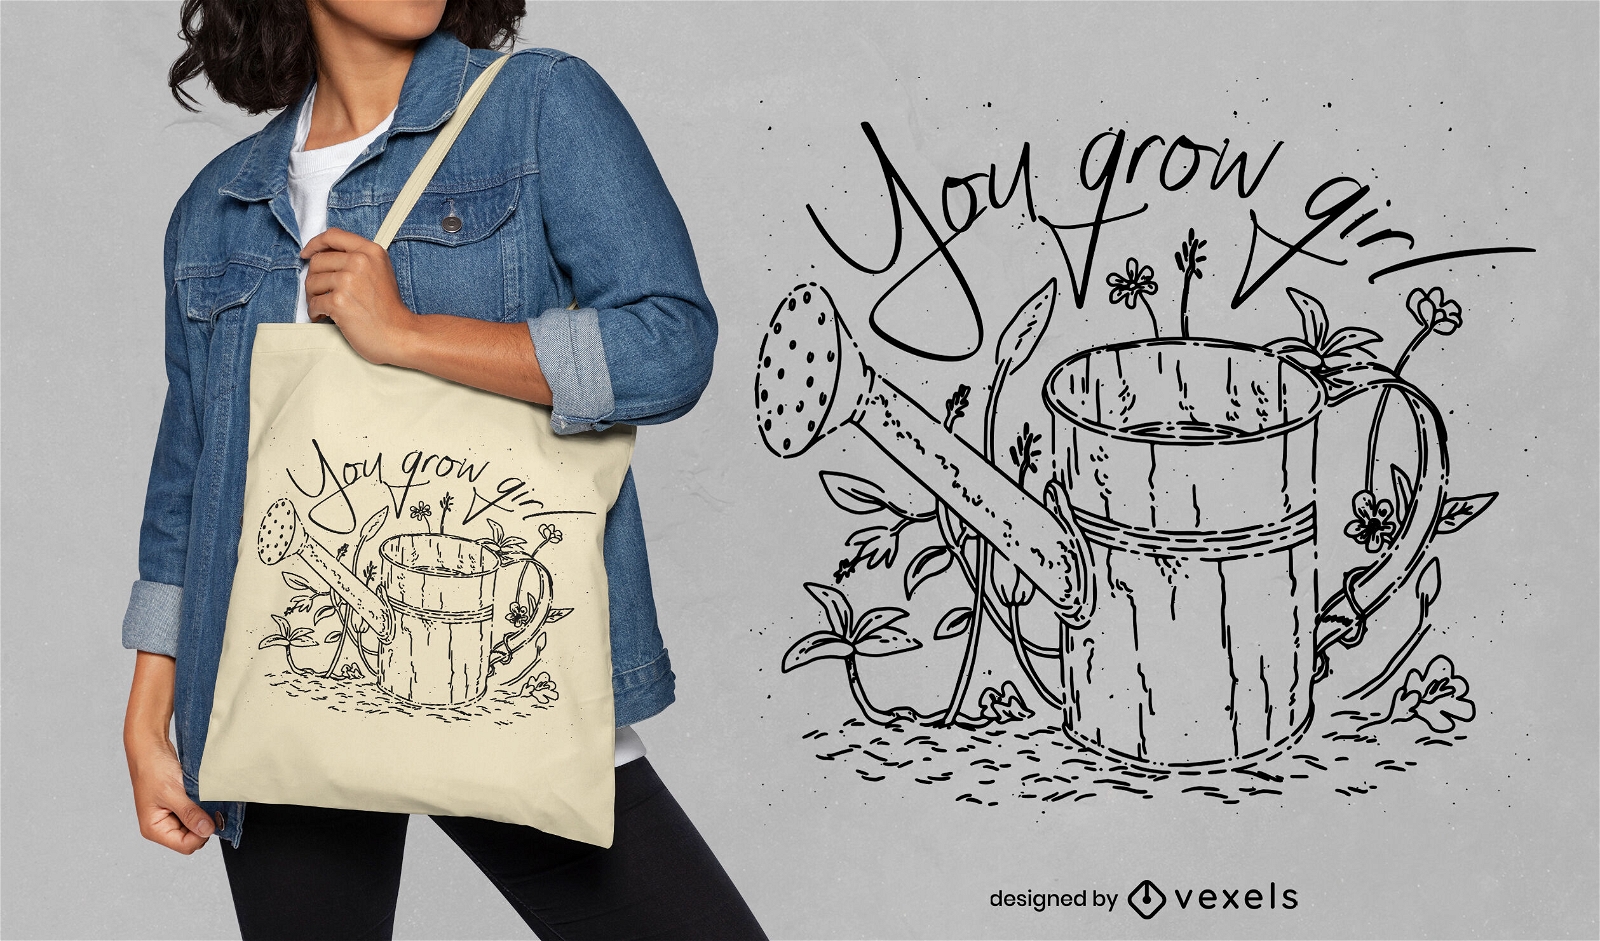 Design divertido de sacola com citações de jardinagem